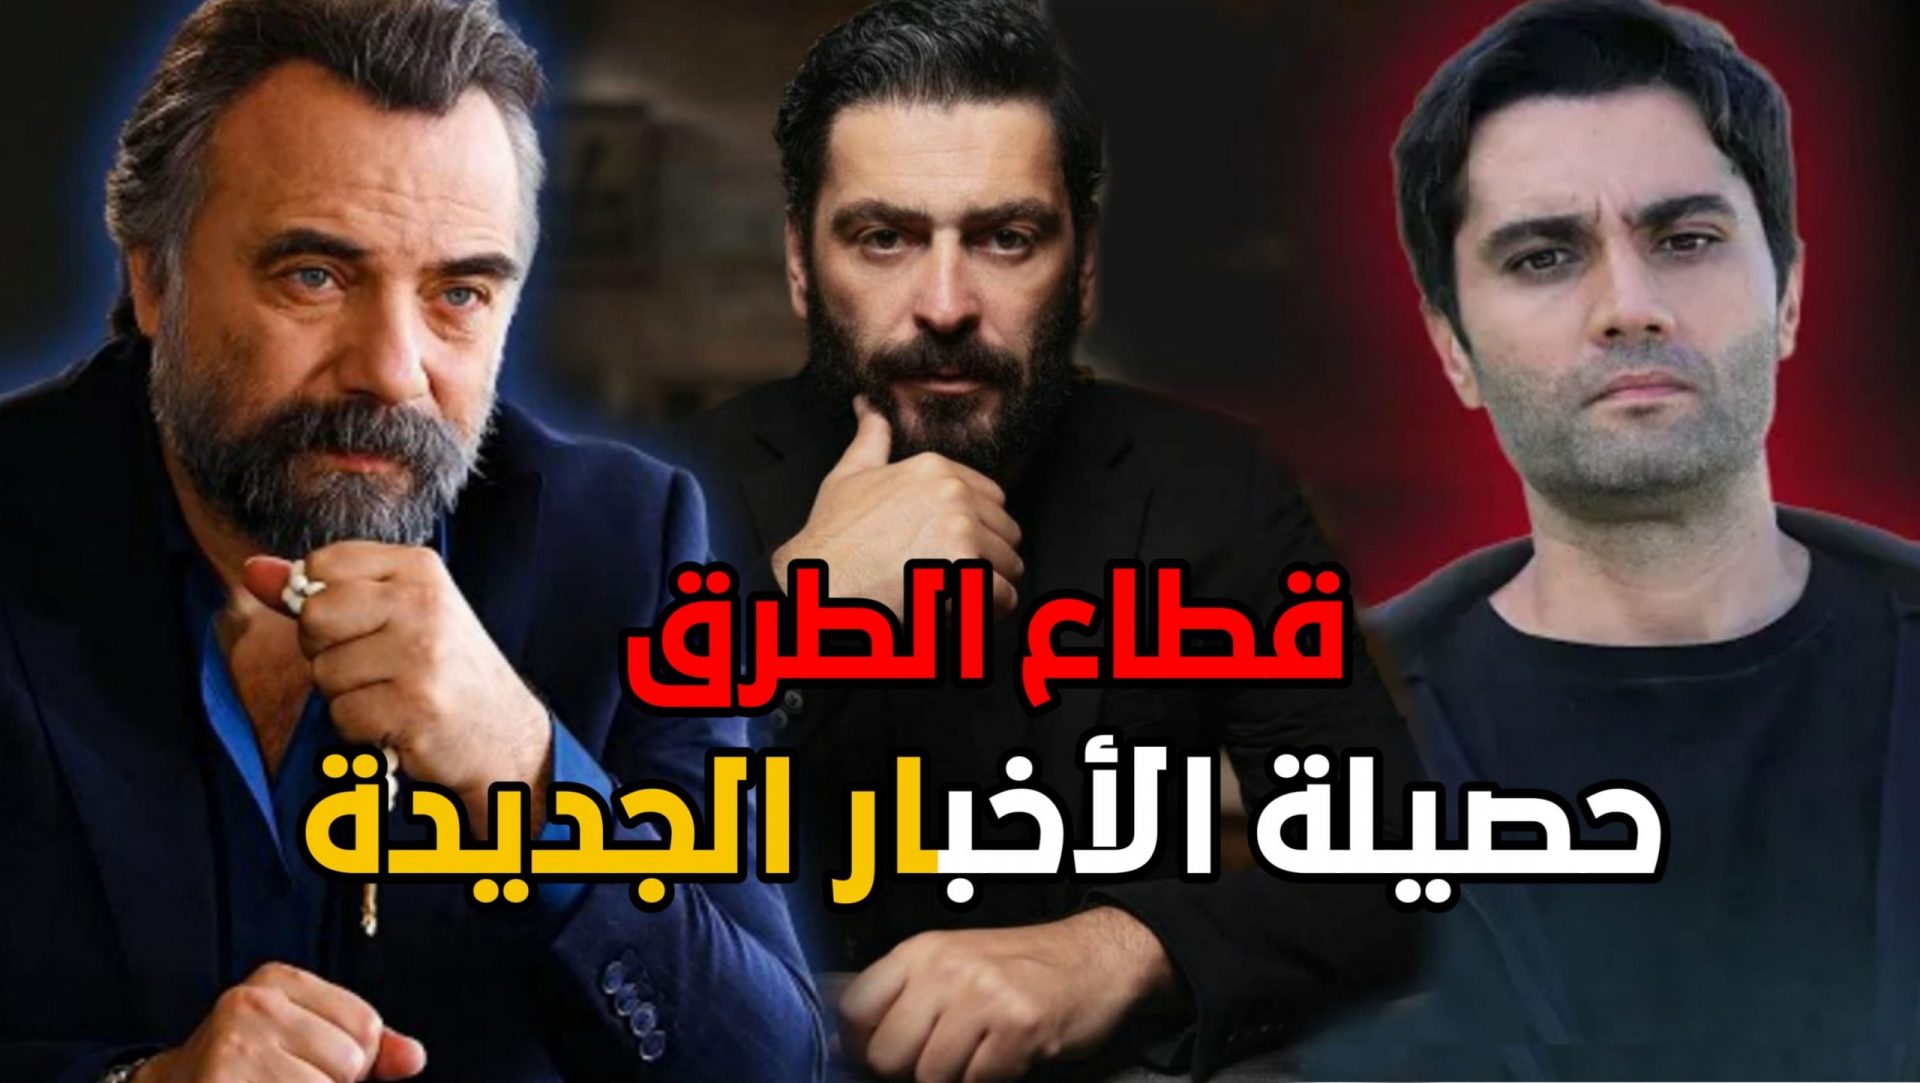 العالم قطاع يحكموا الطرق الموسم السابع لن قطاع الطرق